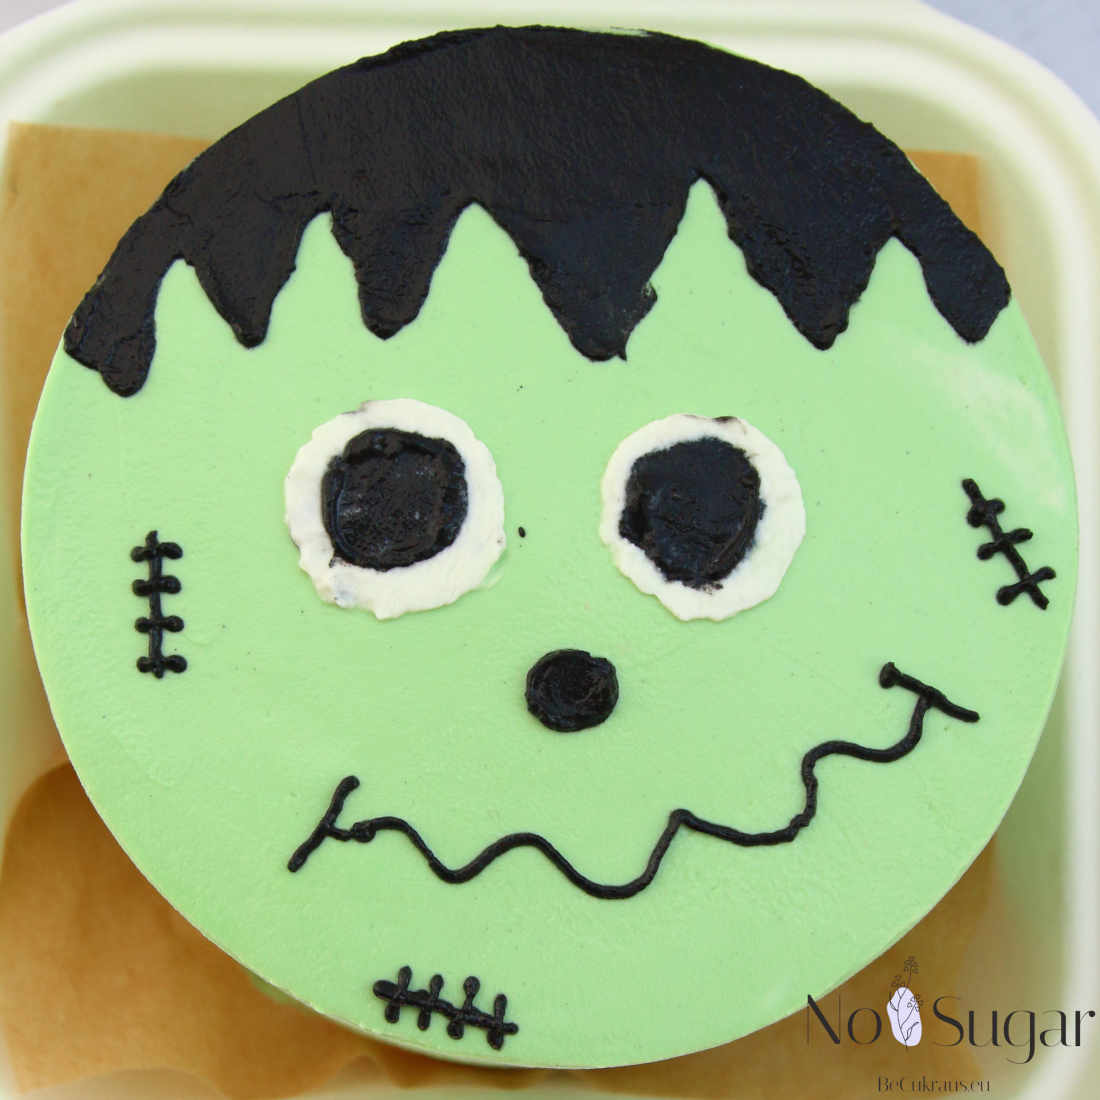 Frankenstein's monster bento cake as a gift